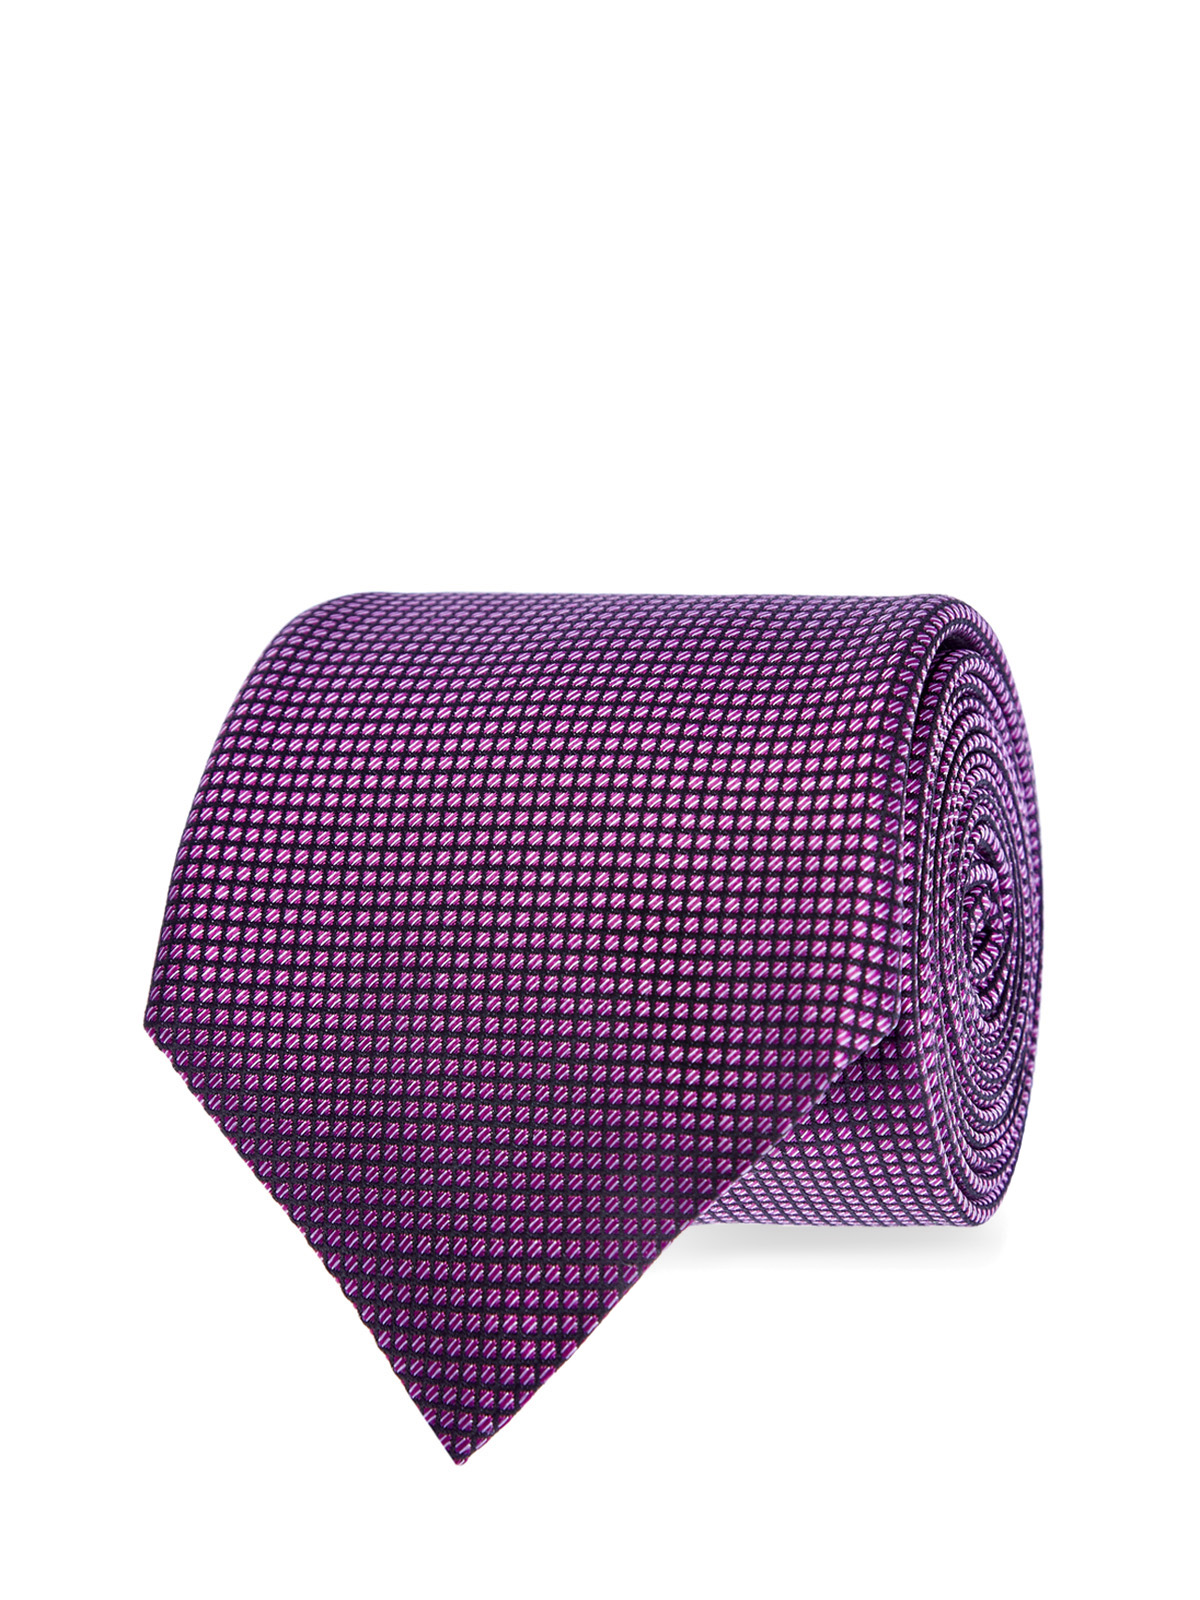 Галстук из цельного отреза шелка с принтом CANALI, цвет фиолетовый, размер 40;41.5;42;42.5;43.5;43;40.5